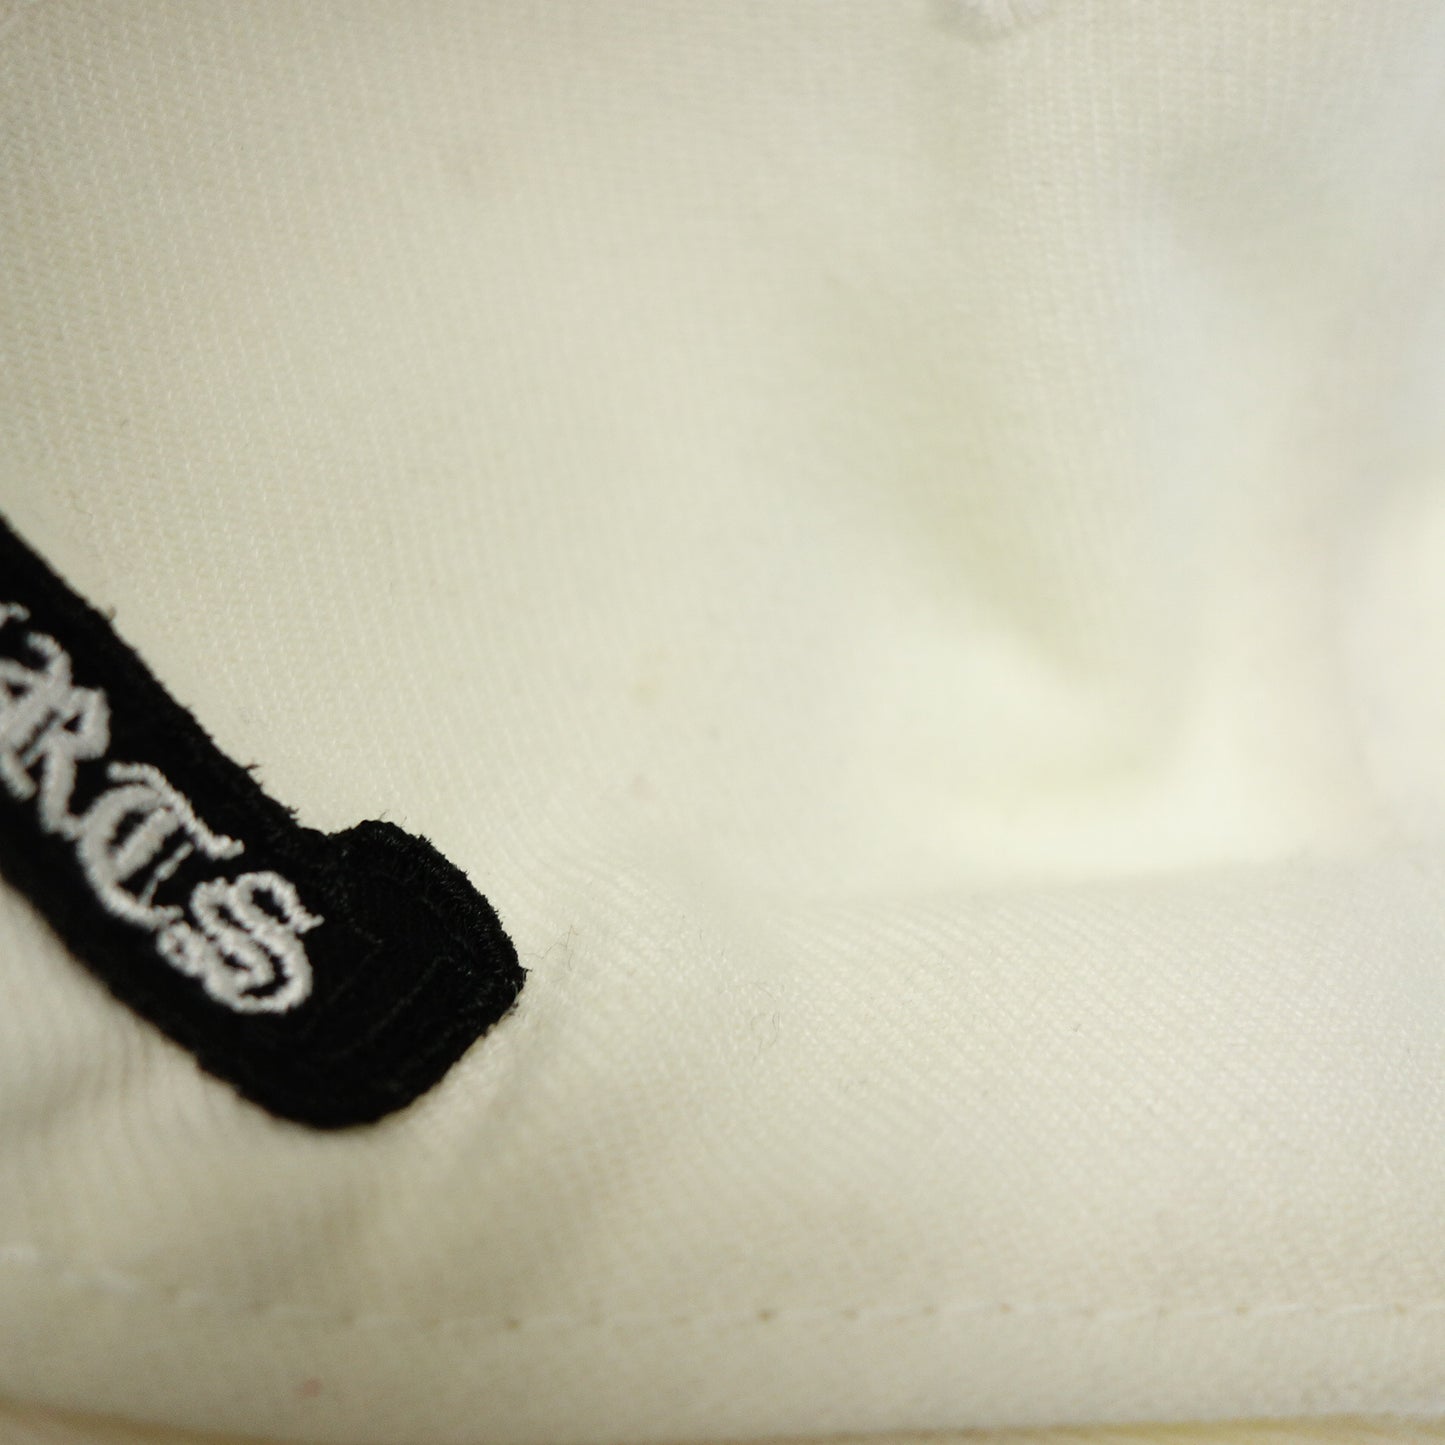 二手 CHROME HEARTS 棒球帽 刺绣徽标 尺寸 59.6cm 白色 2238-304-2715 CHROME HEARTS [AFI20] 